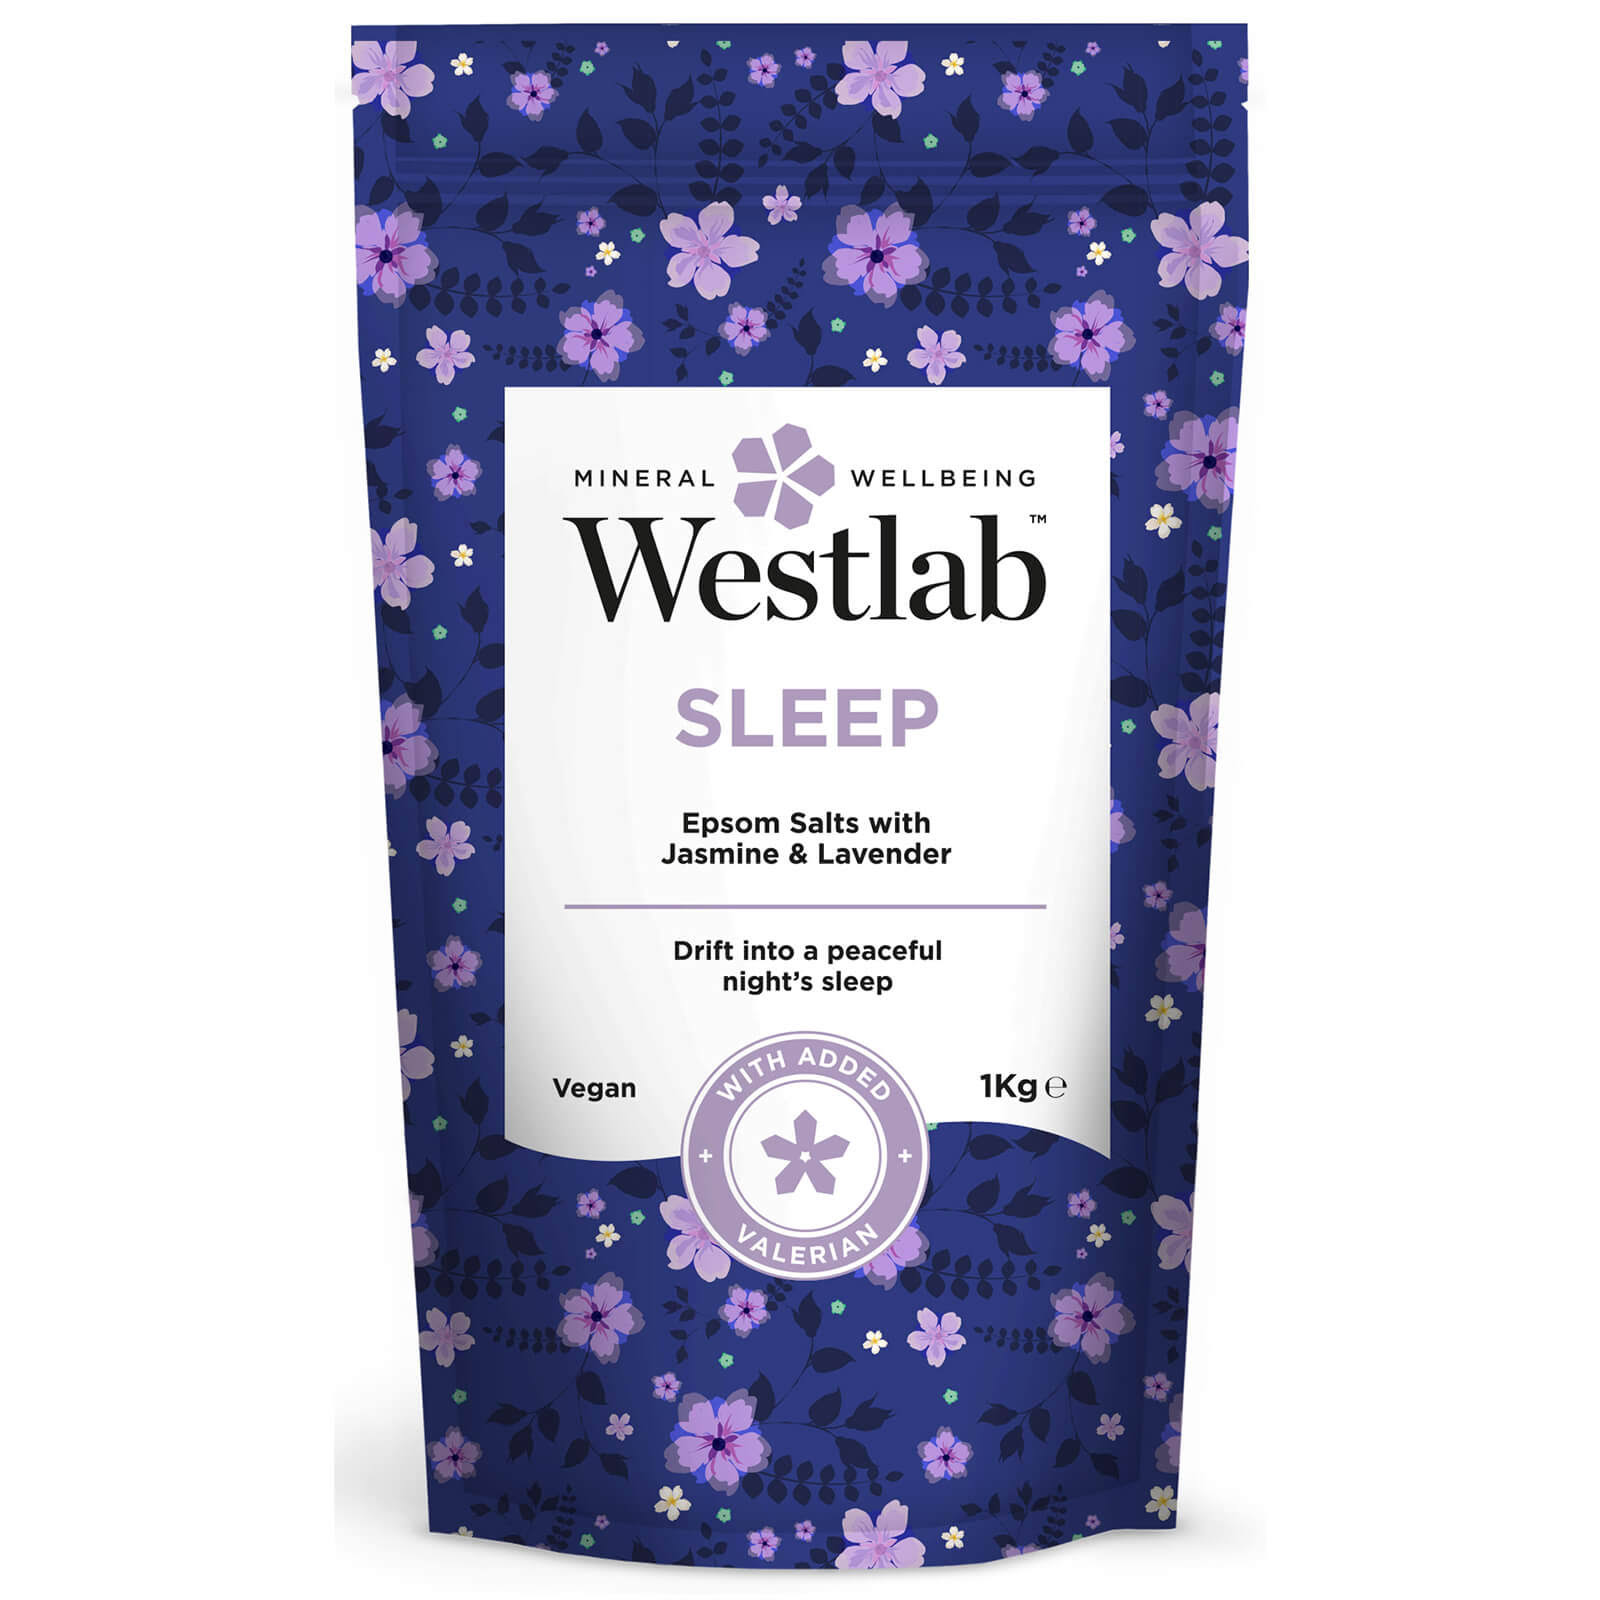 Westlab Sleep Epsom and Dead Sea Salts - With Lavender and Jasmine, 1kg